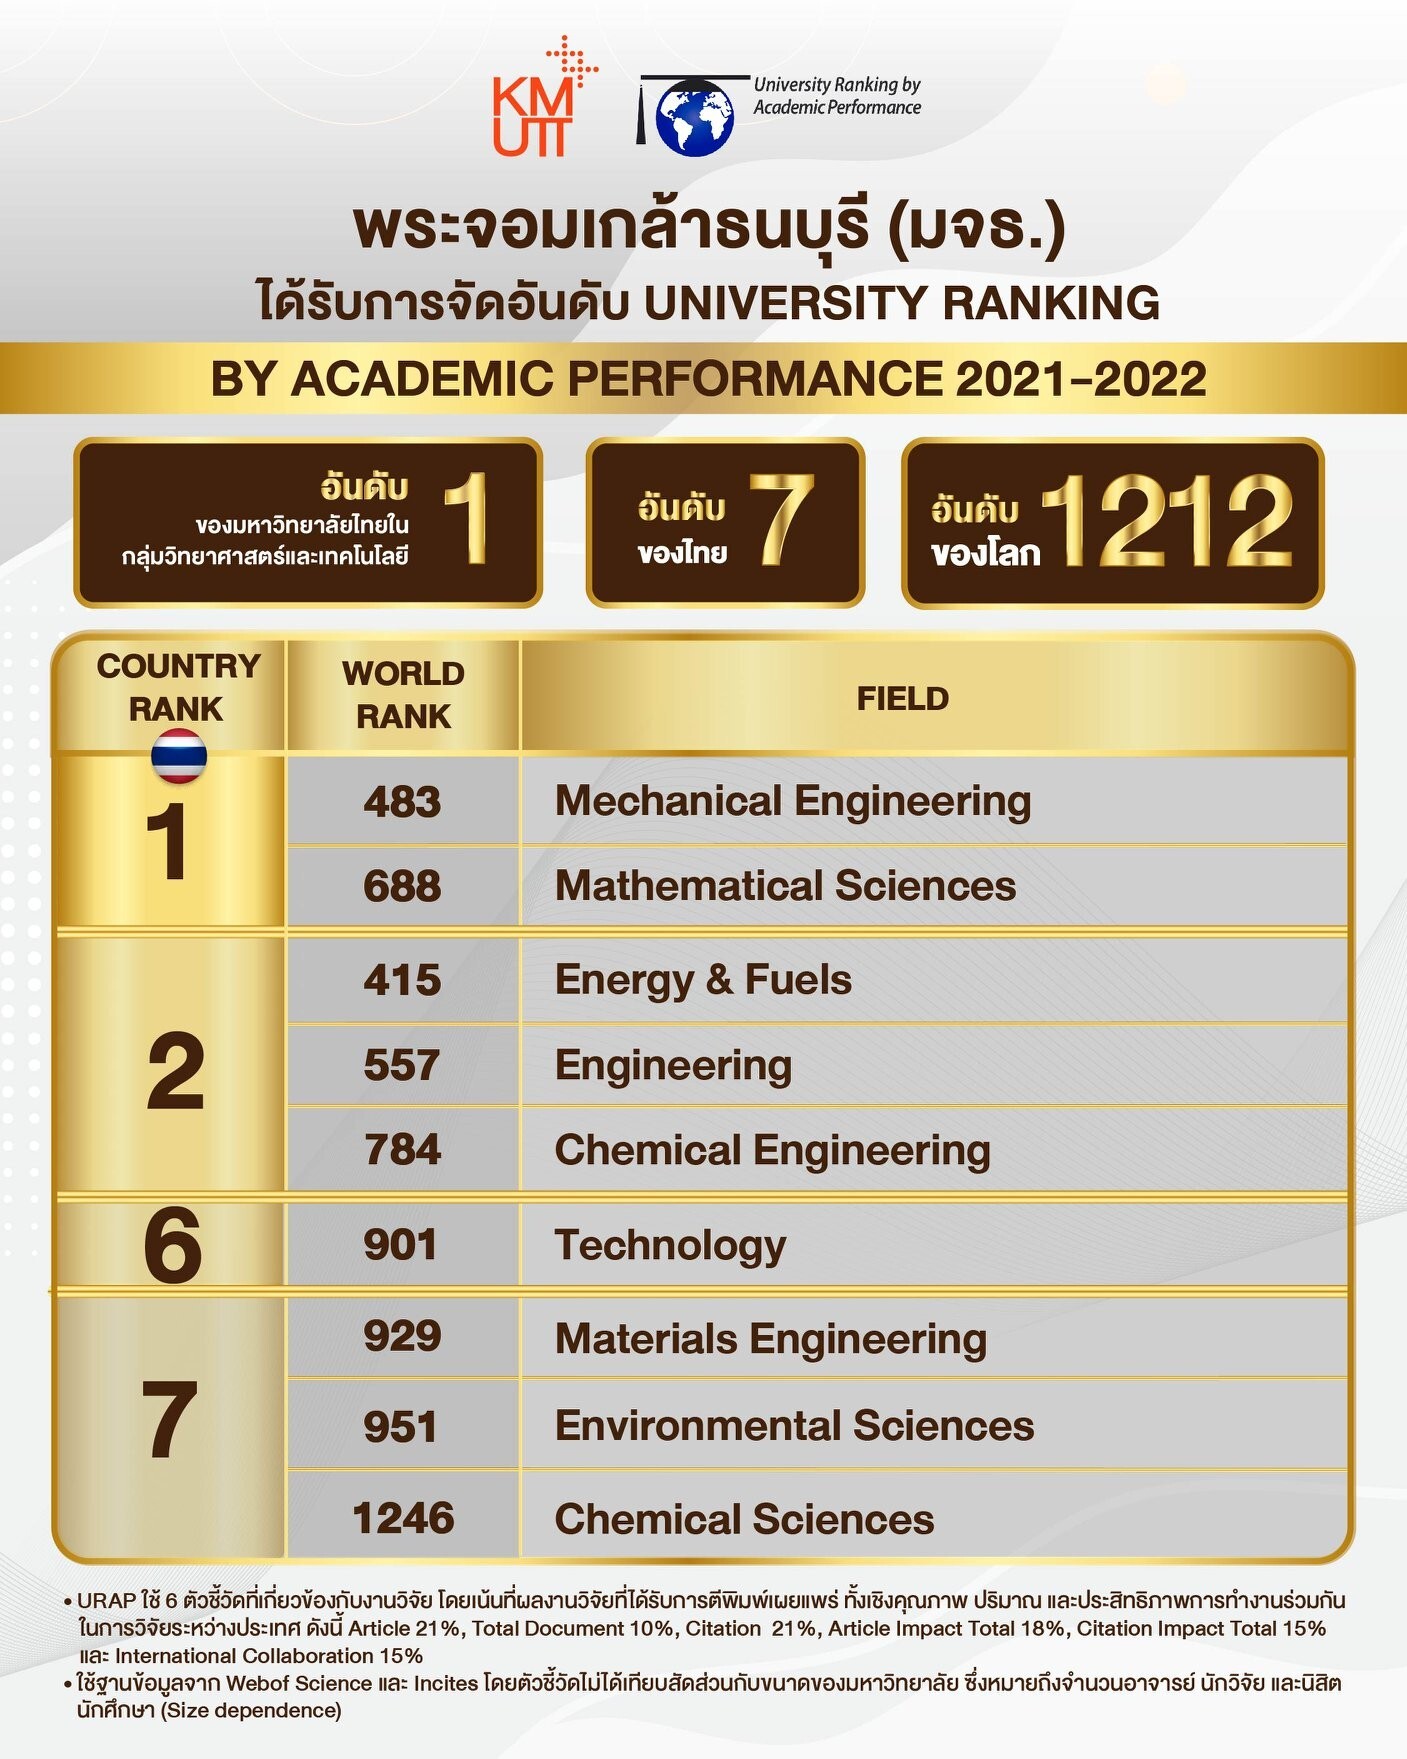 มจธ. อันดับ 1 ของมหาวิทยาลัยไทยในกลุ่มวิทยาศาสตร์และเทคโนโลยี จากการจัดอันดับของ URAP 2021-2022